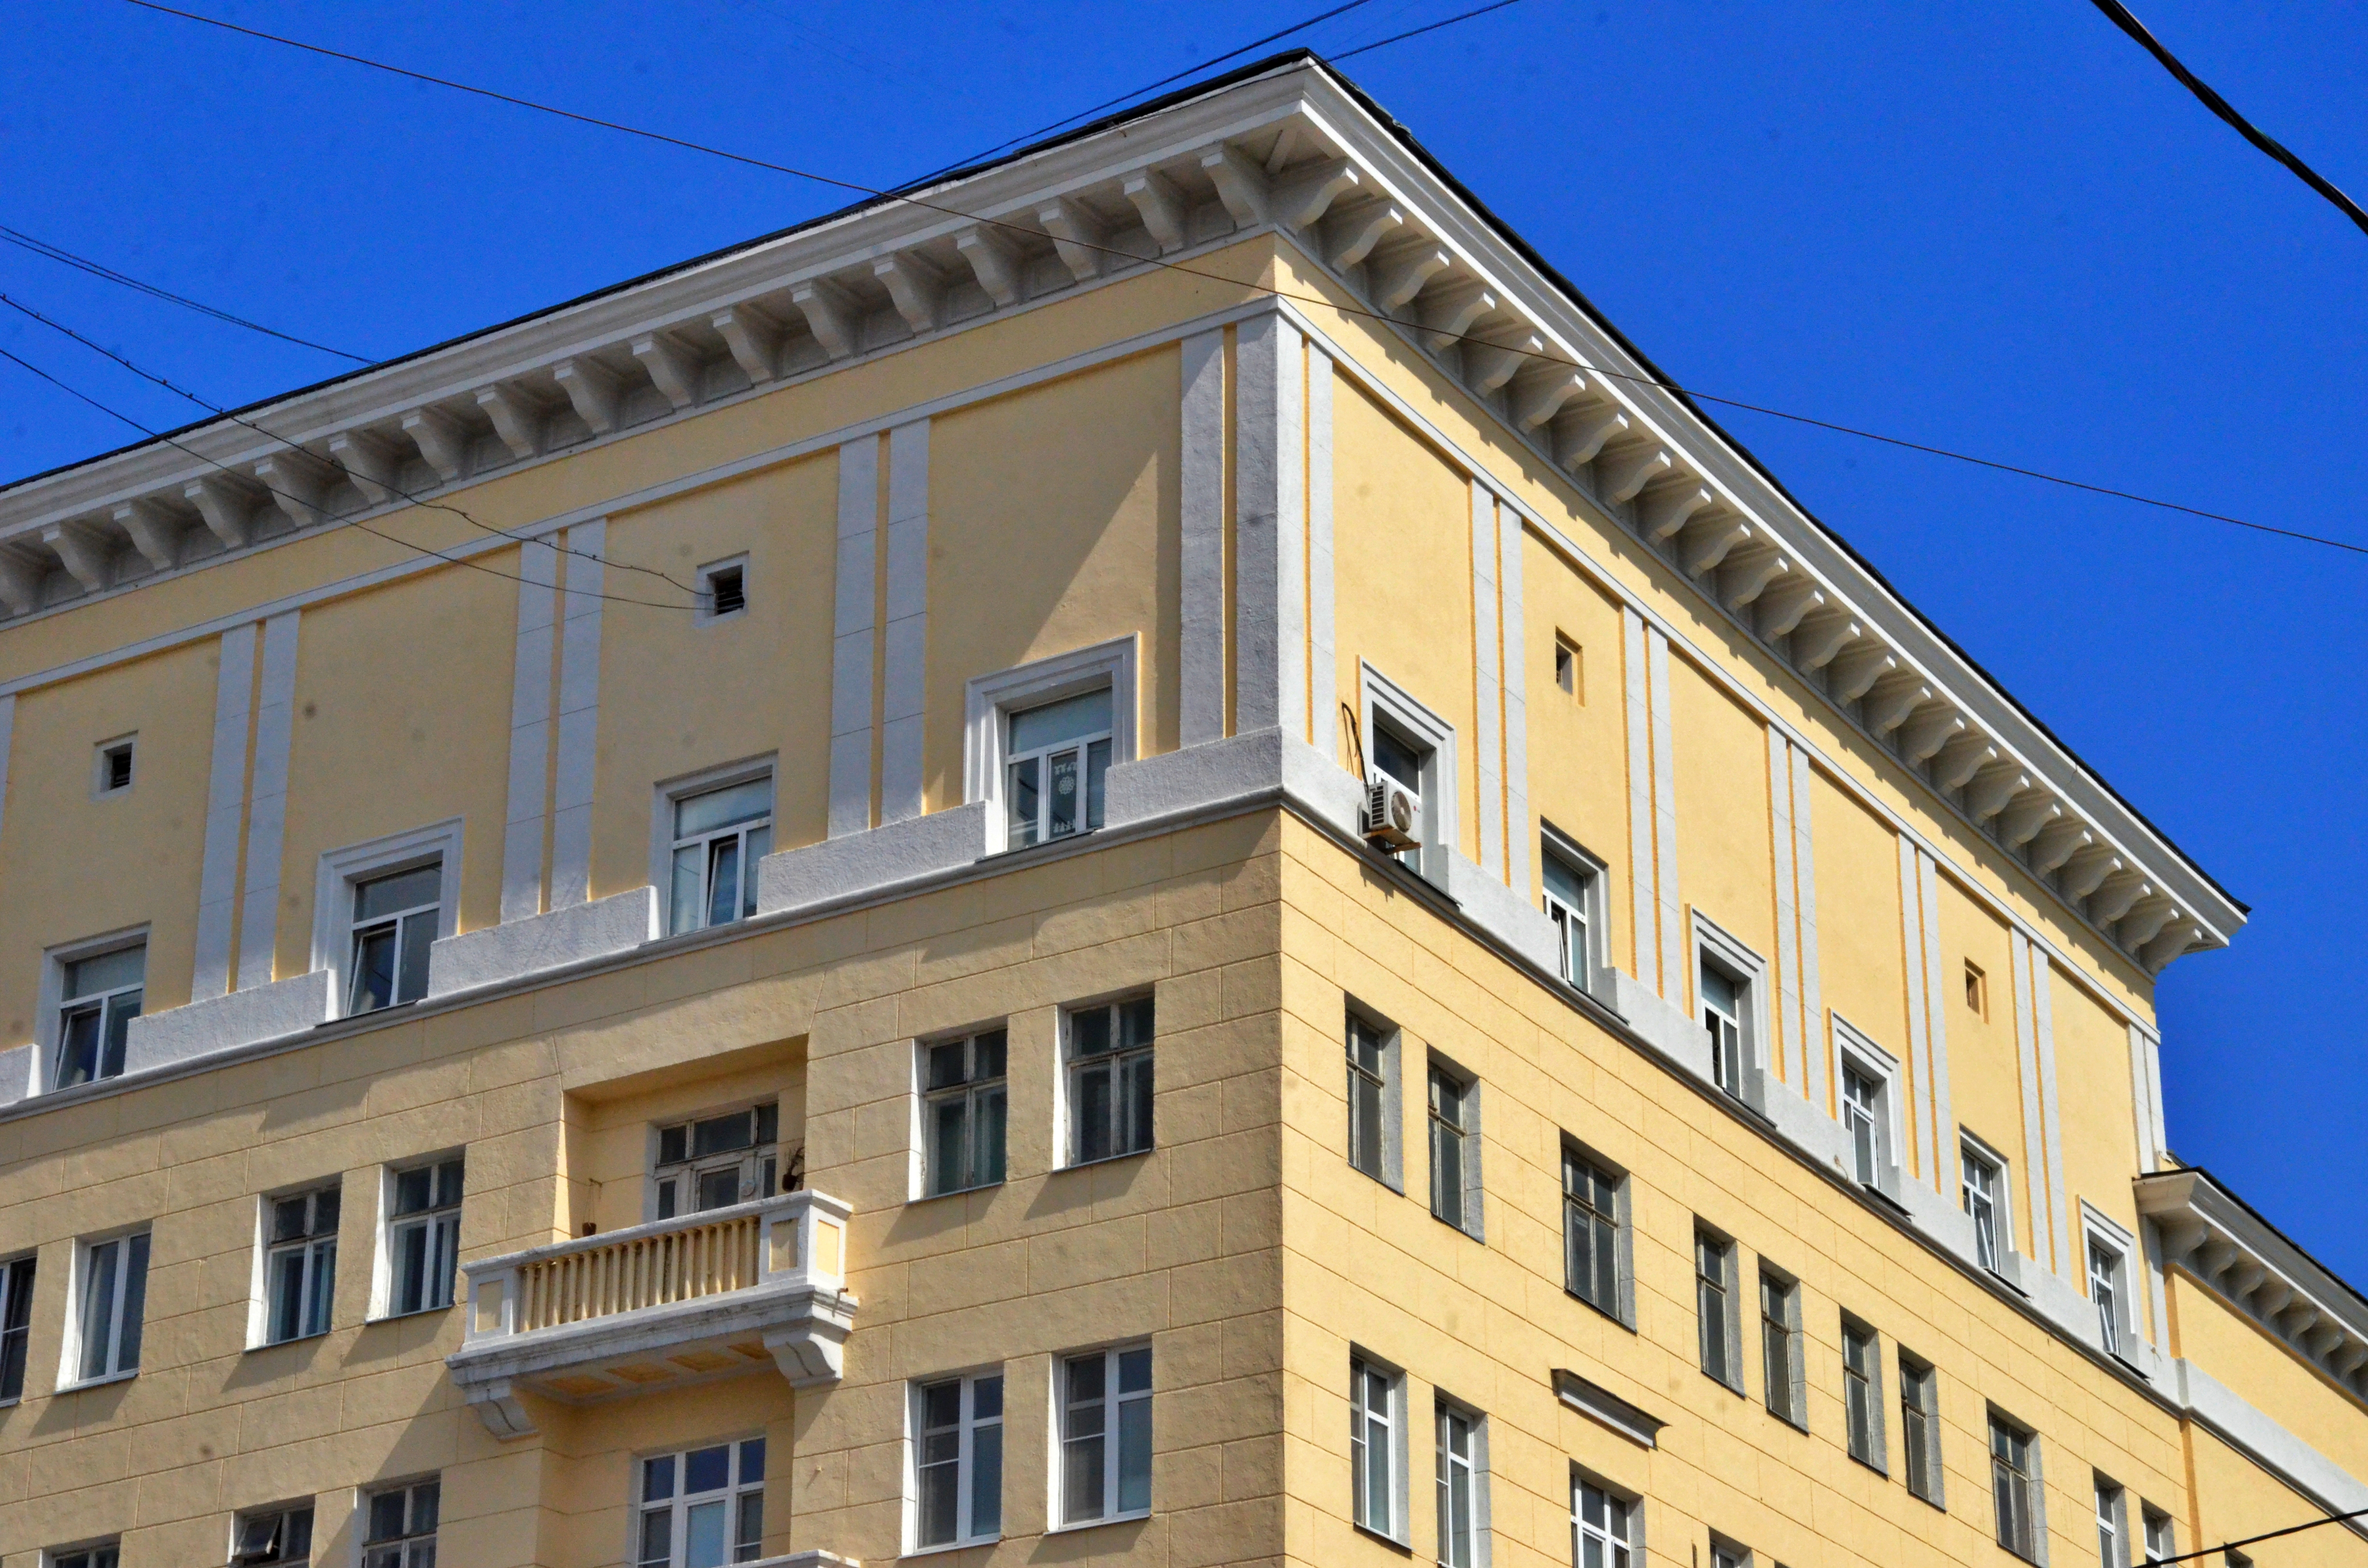 Капремонт проведут в многоквартирном доме 1914 года постройки на улице Тихвинская. Фото: Анна Быкова